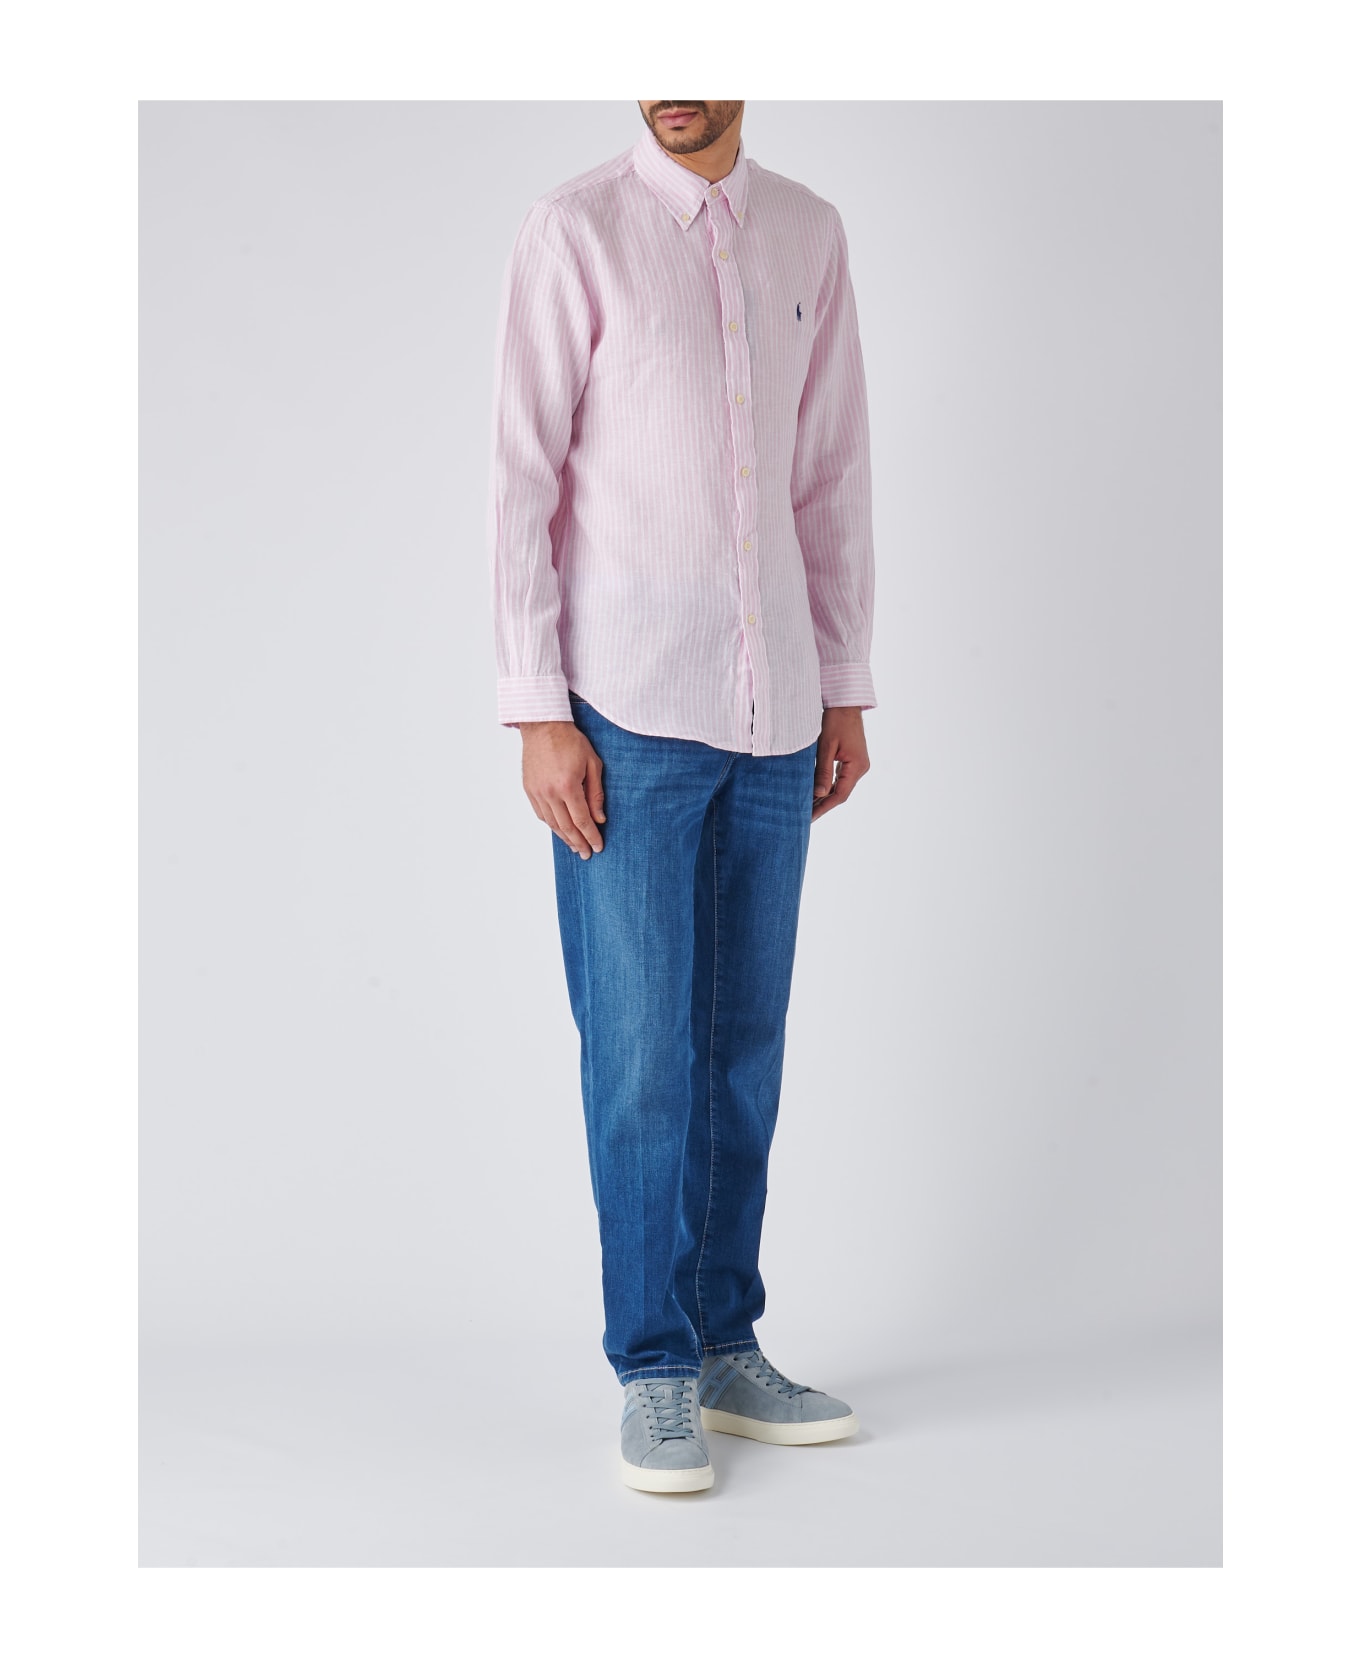 Polo Ralph Lauren Long Sleeve Sport Shirt Shirt - ROSA-BIANCO